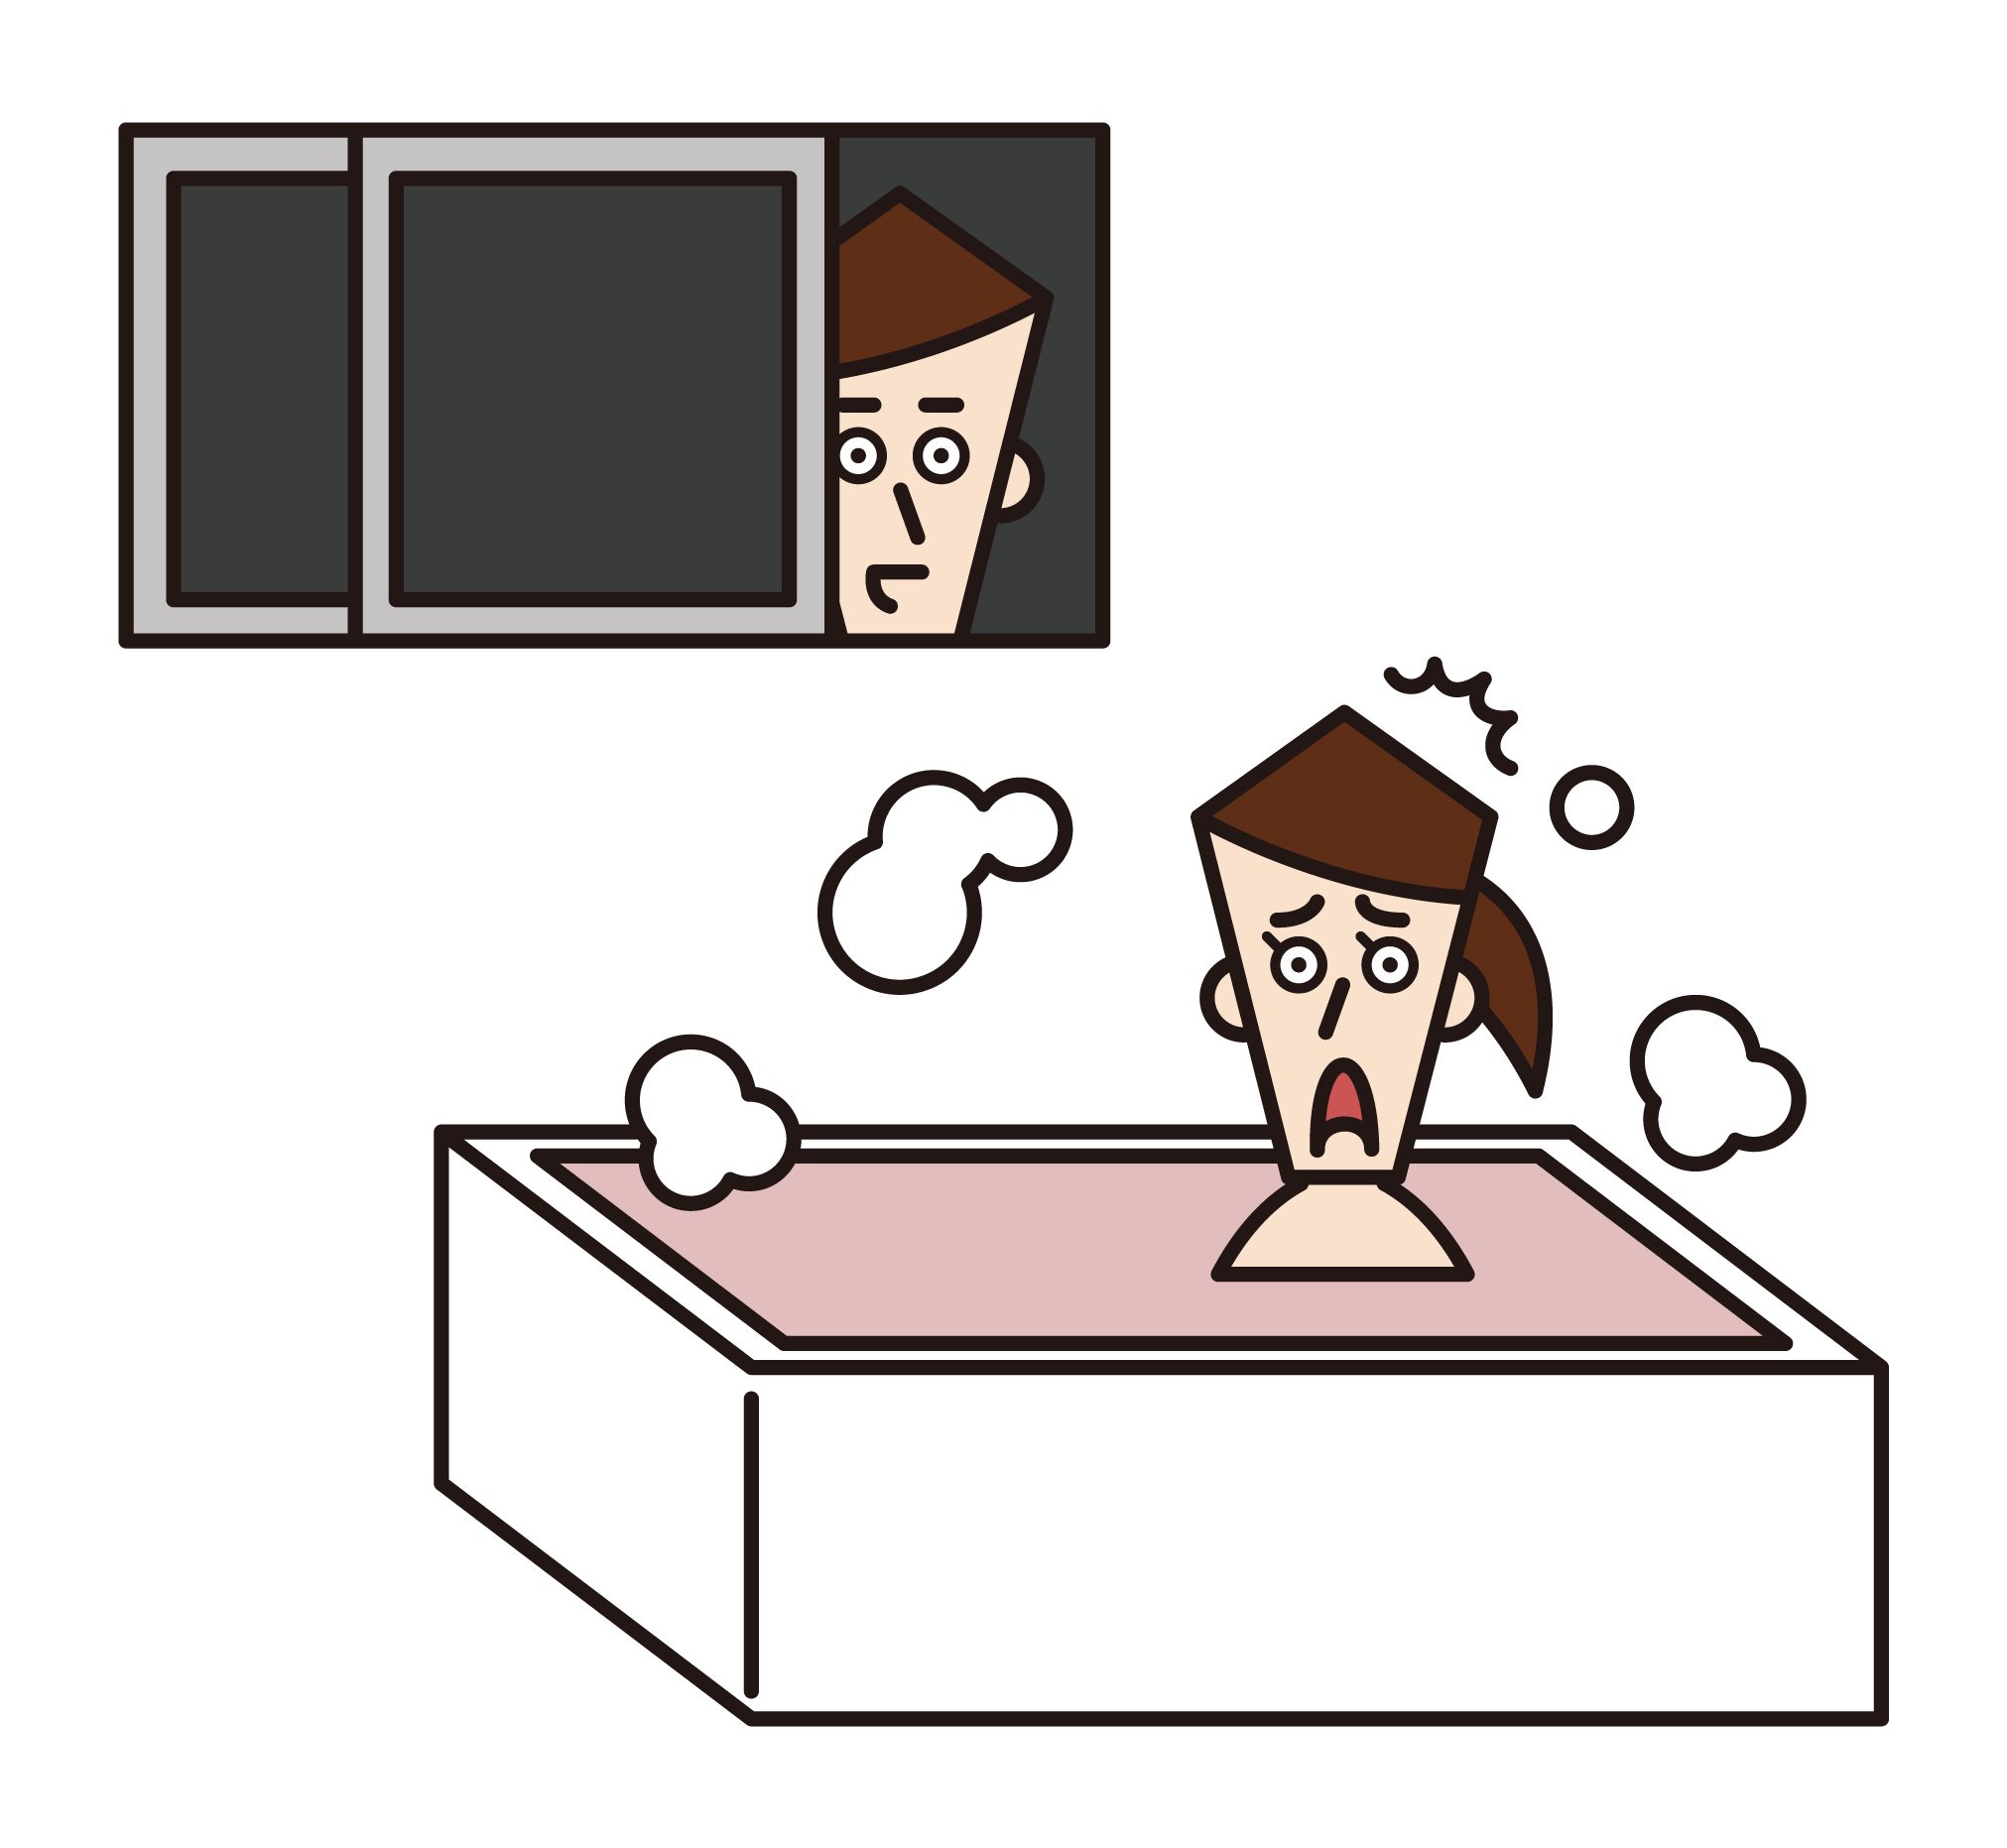 莫萊斯特（男性）的插圖，窺視婦女在洗澡